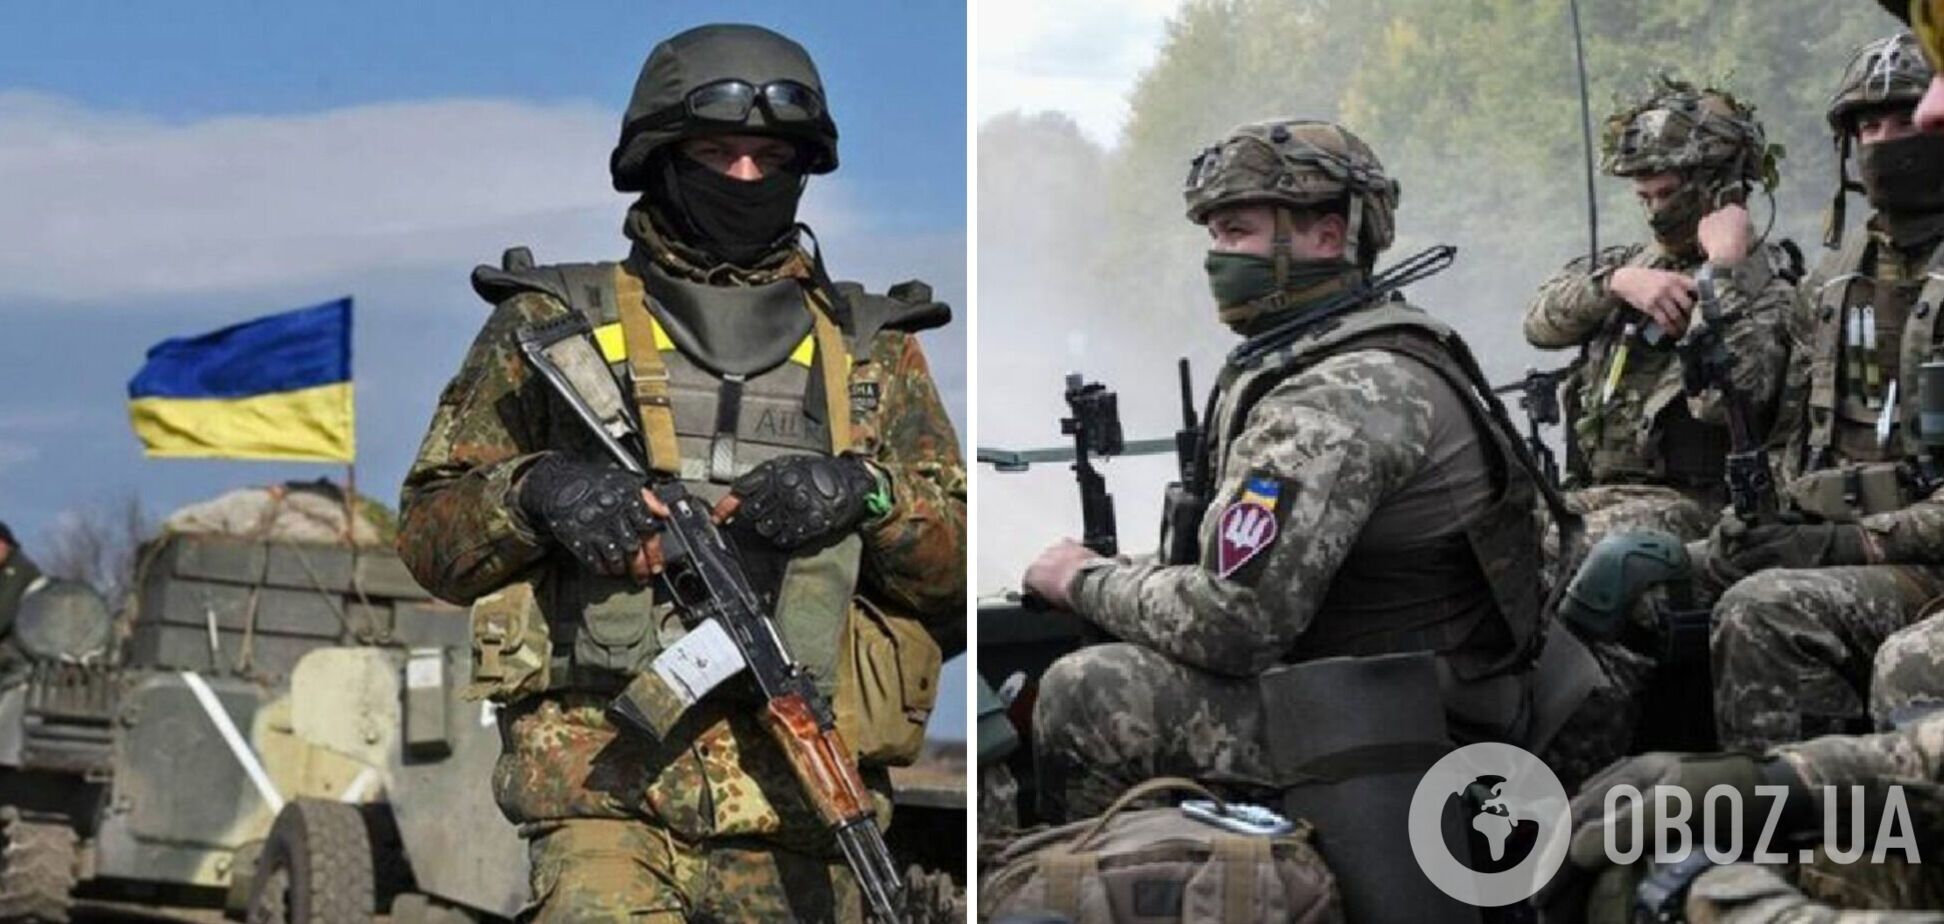 ВСУ провели успешную контратаку в Донецкой области и ликвидировали оккупантов. Фото 18+